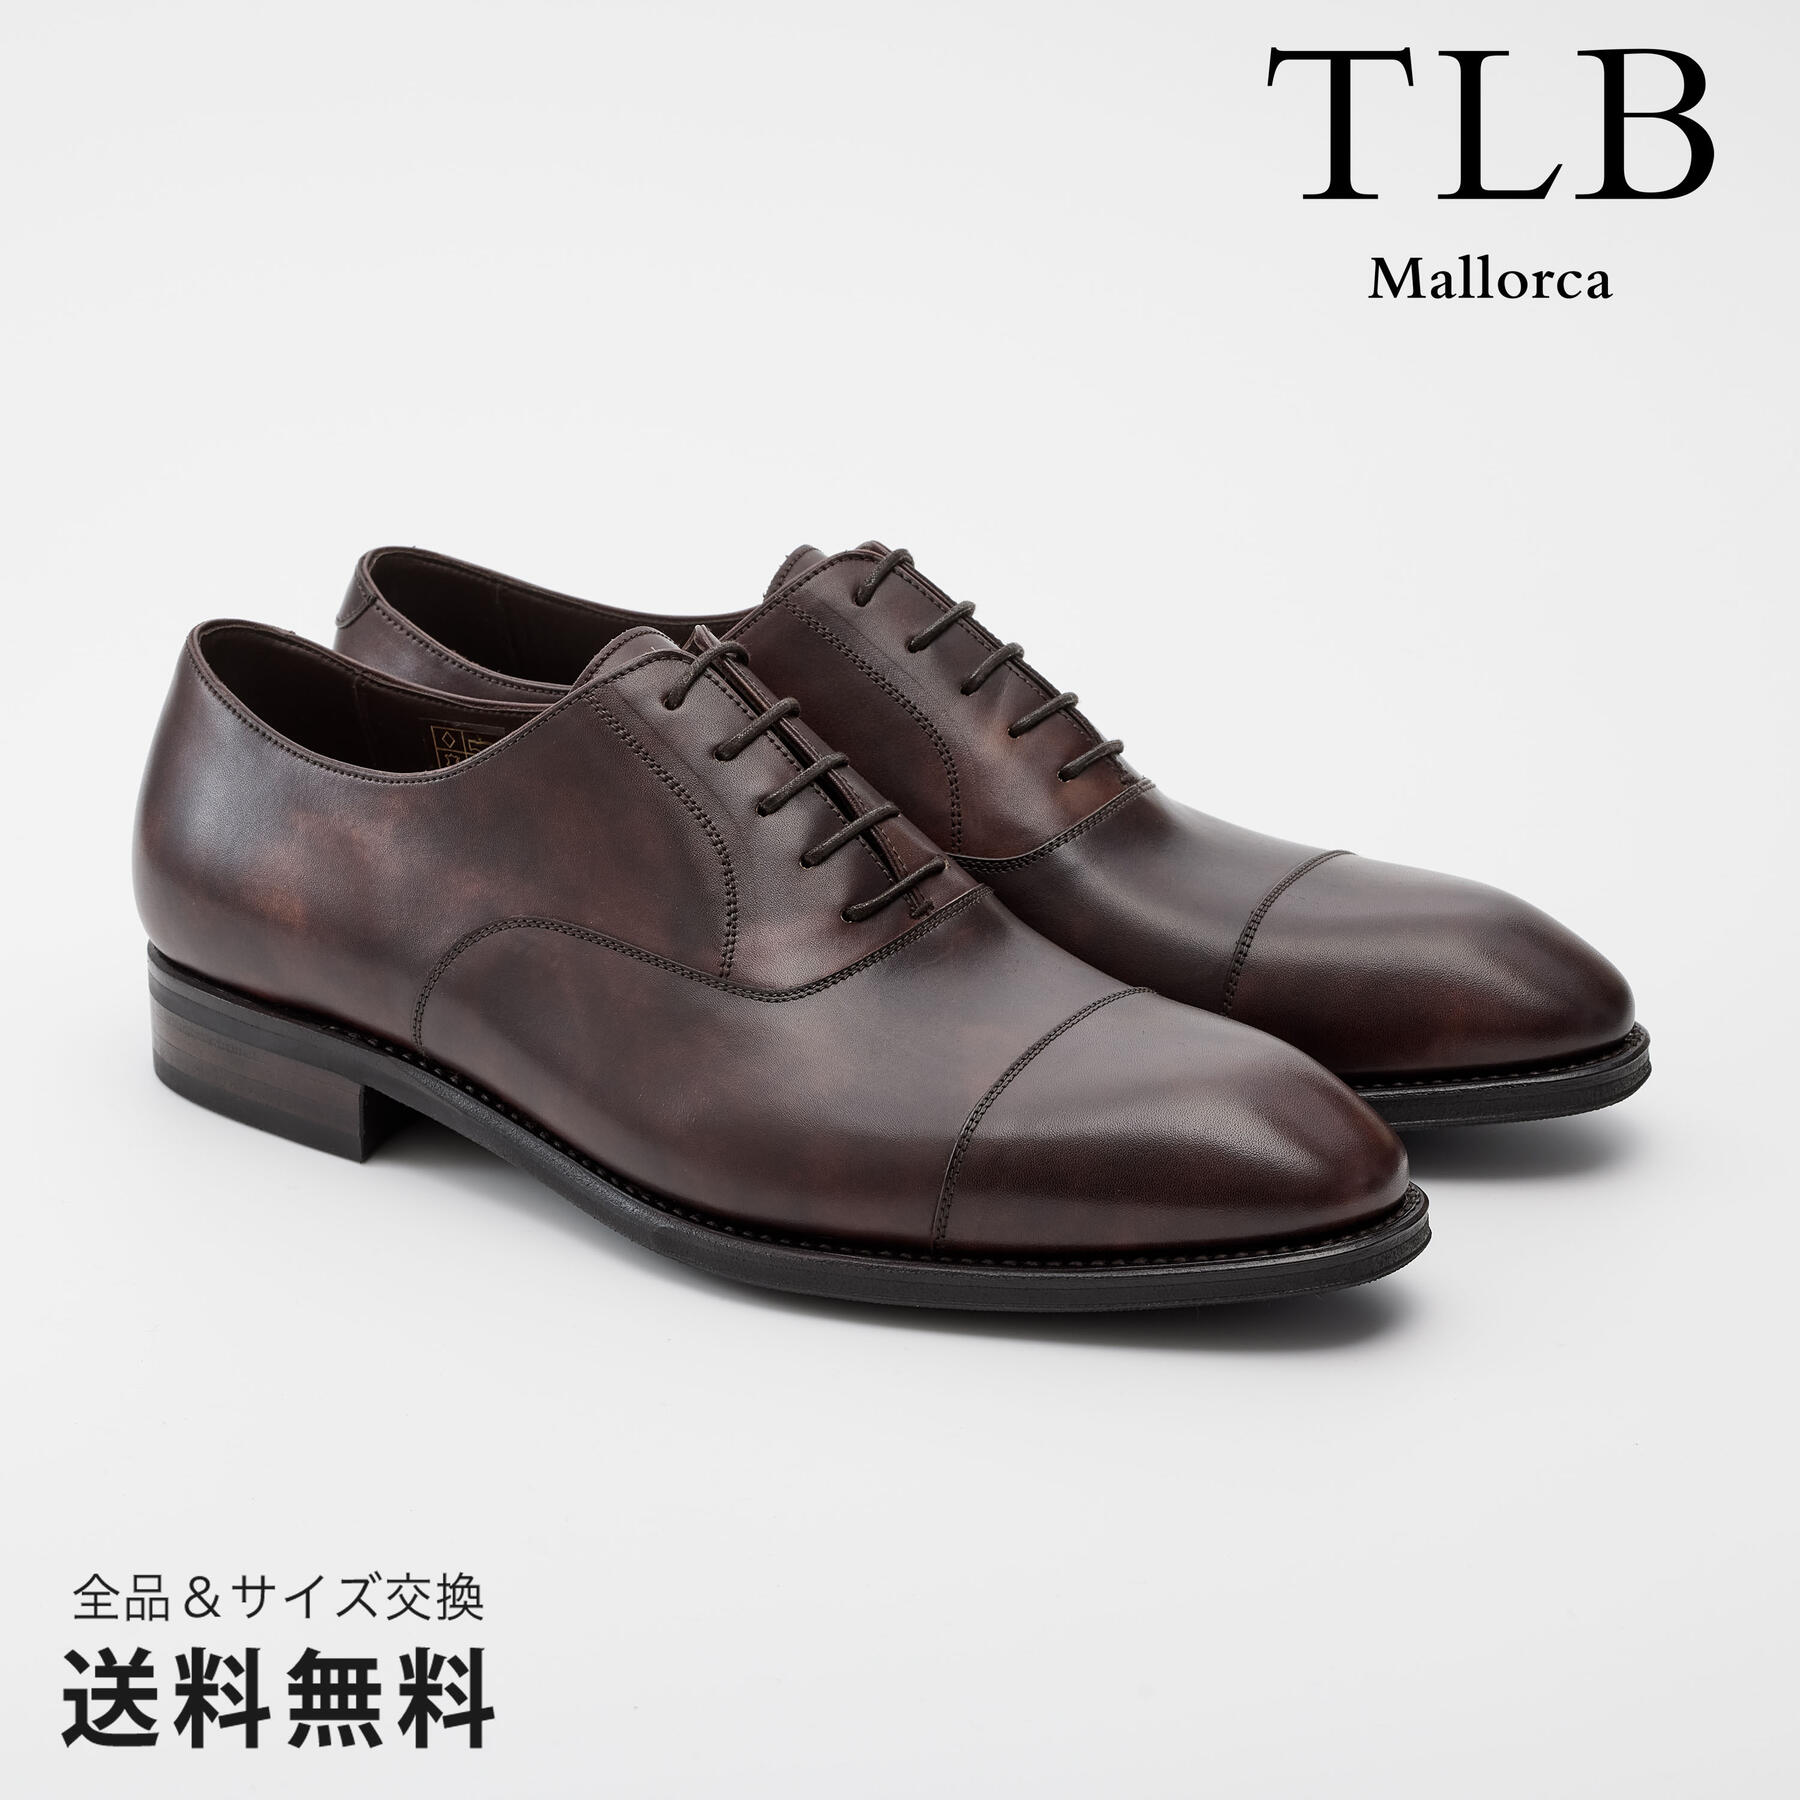 TLB Mallorca ティーエルビー レースアップ ストレートチップ 革靴 ミュージアムカーフ ダークブラウン グットイヤーウェルト 茶 DARK BROWN 50204 スペイン 靴 メンズ靴 ビジネスシューズ サイズ 24.0 - 26.5cm